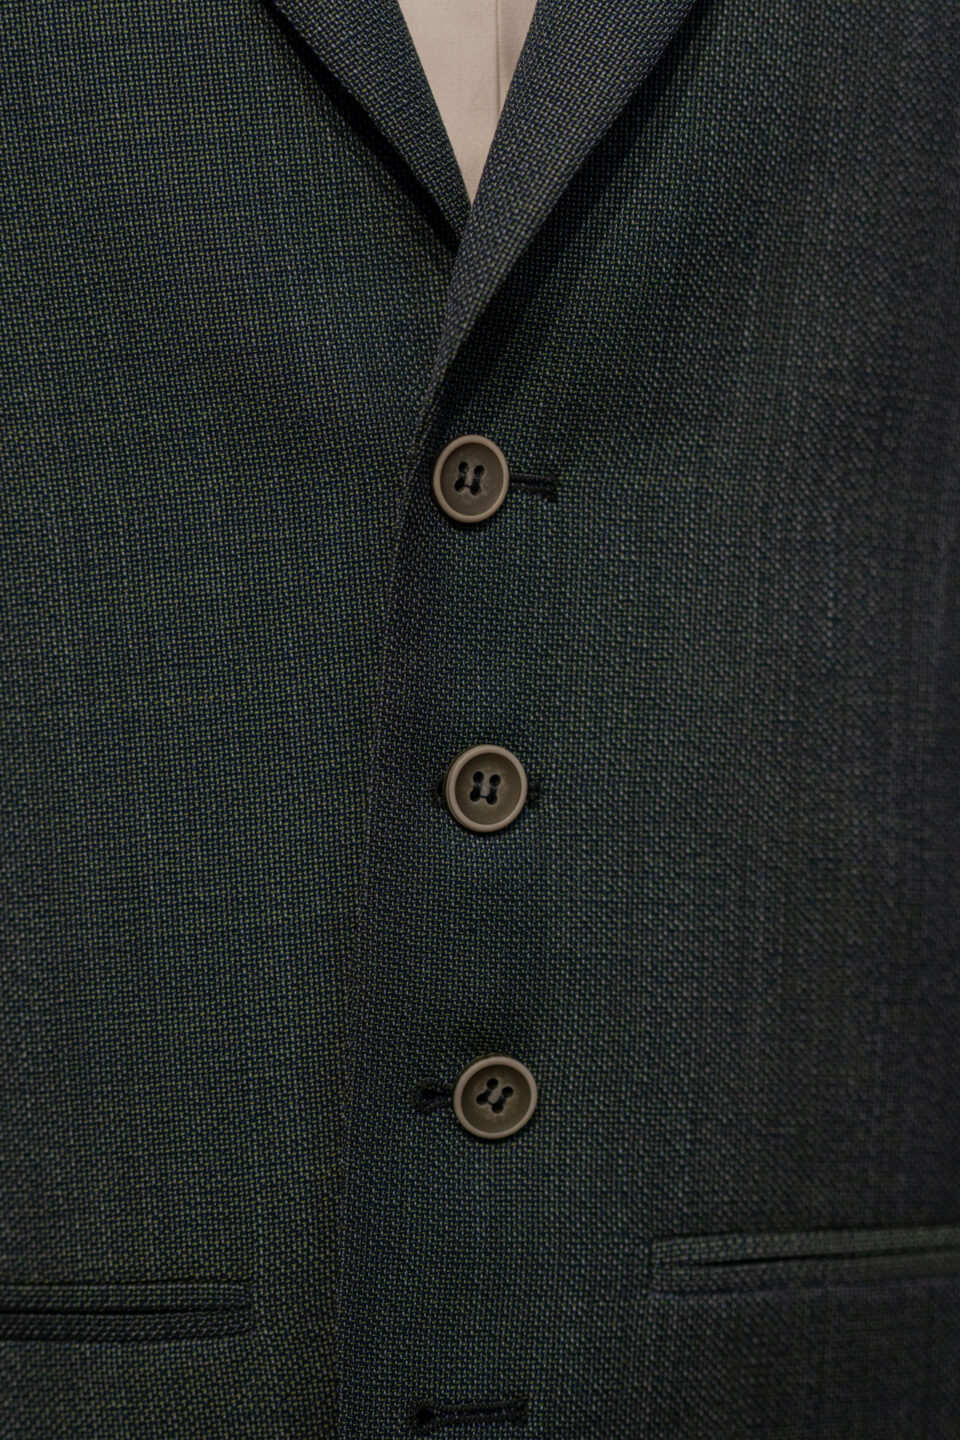 Detailaufnahme des Anzugs